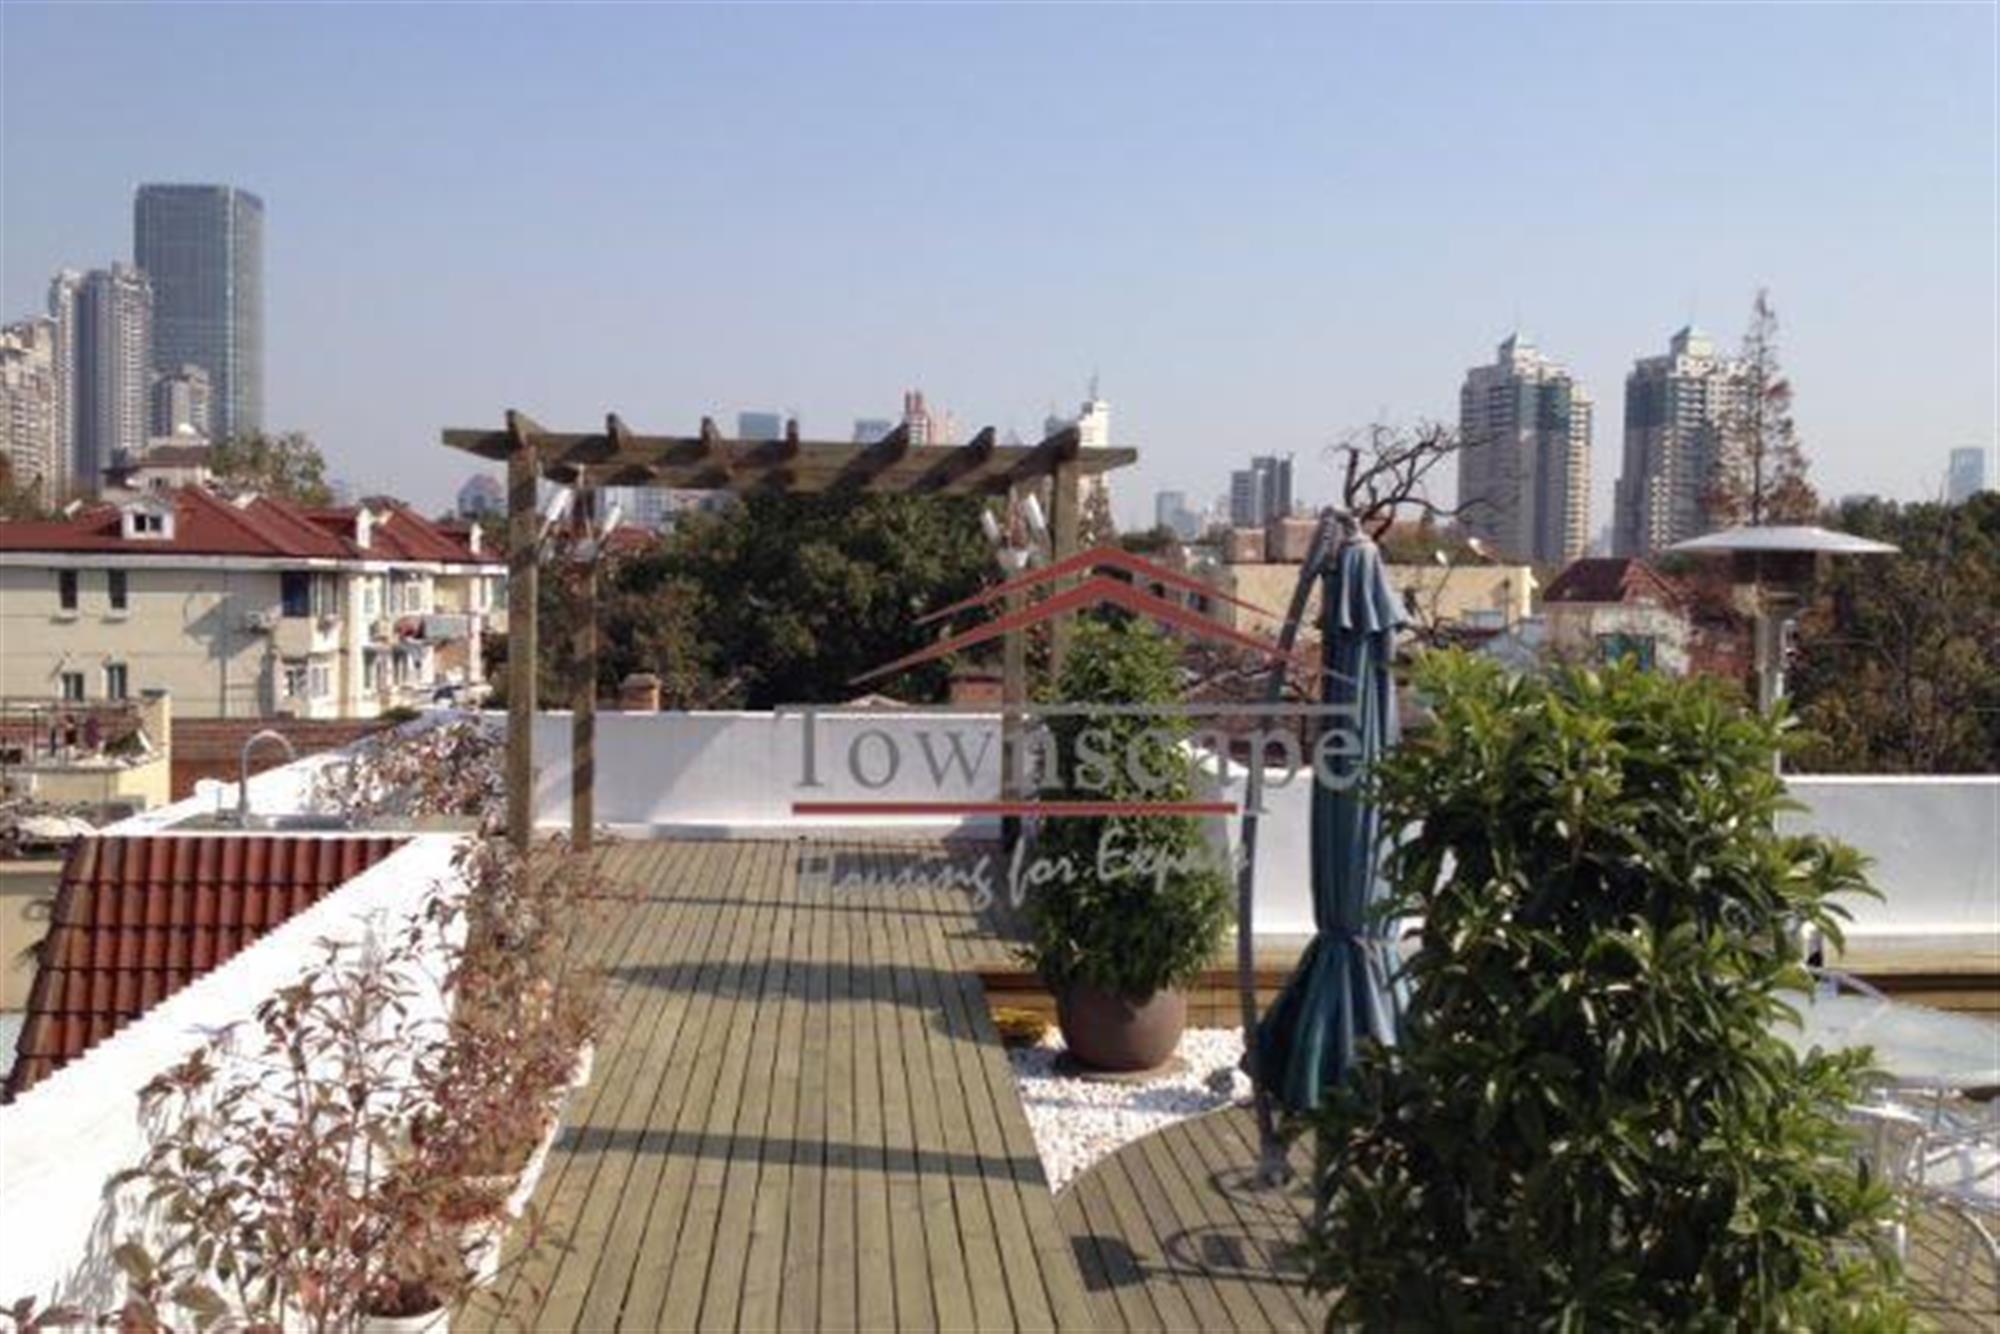 ROOFTOP GARDEN FFC Rooftop Dream Garden + 2 Terraces Apartment for Rent in Shanghai